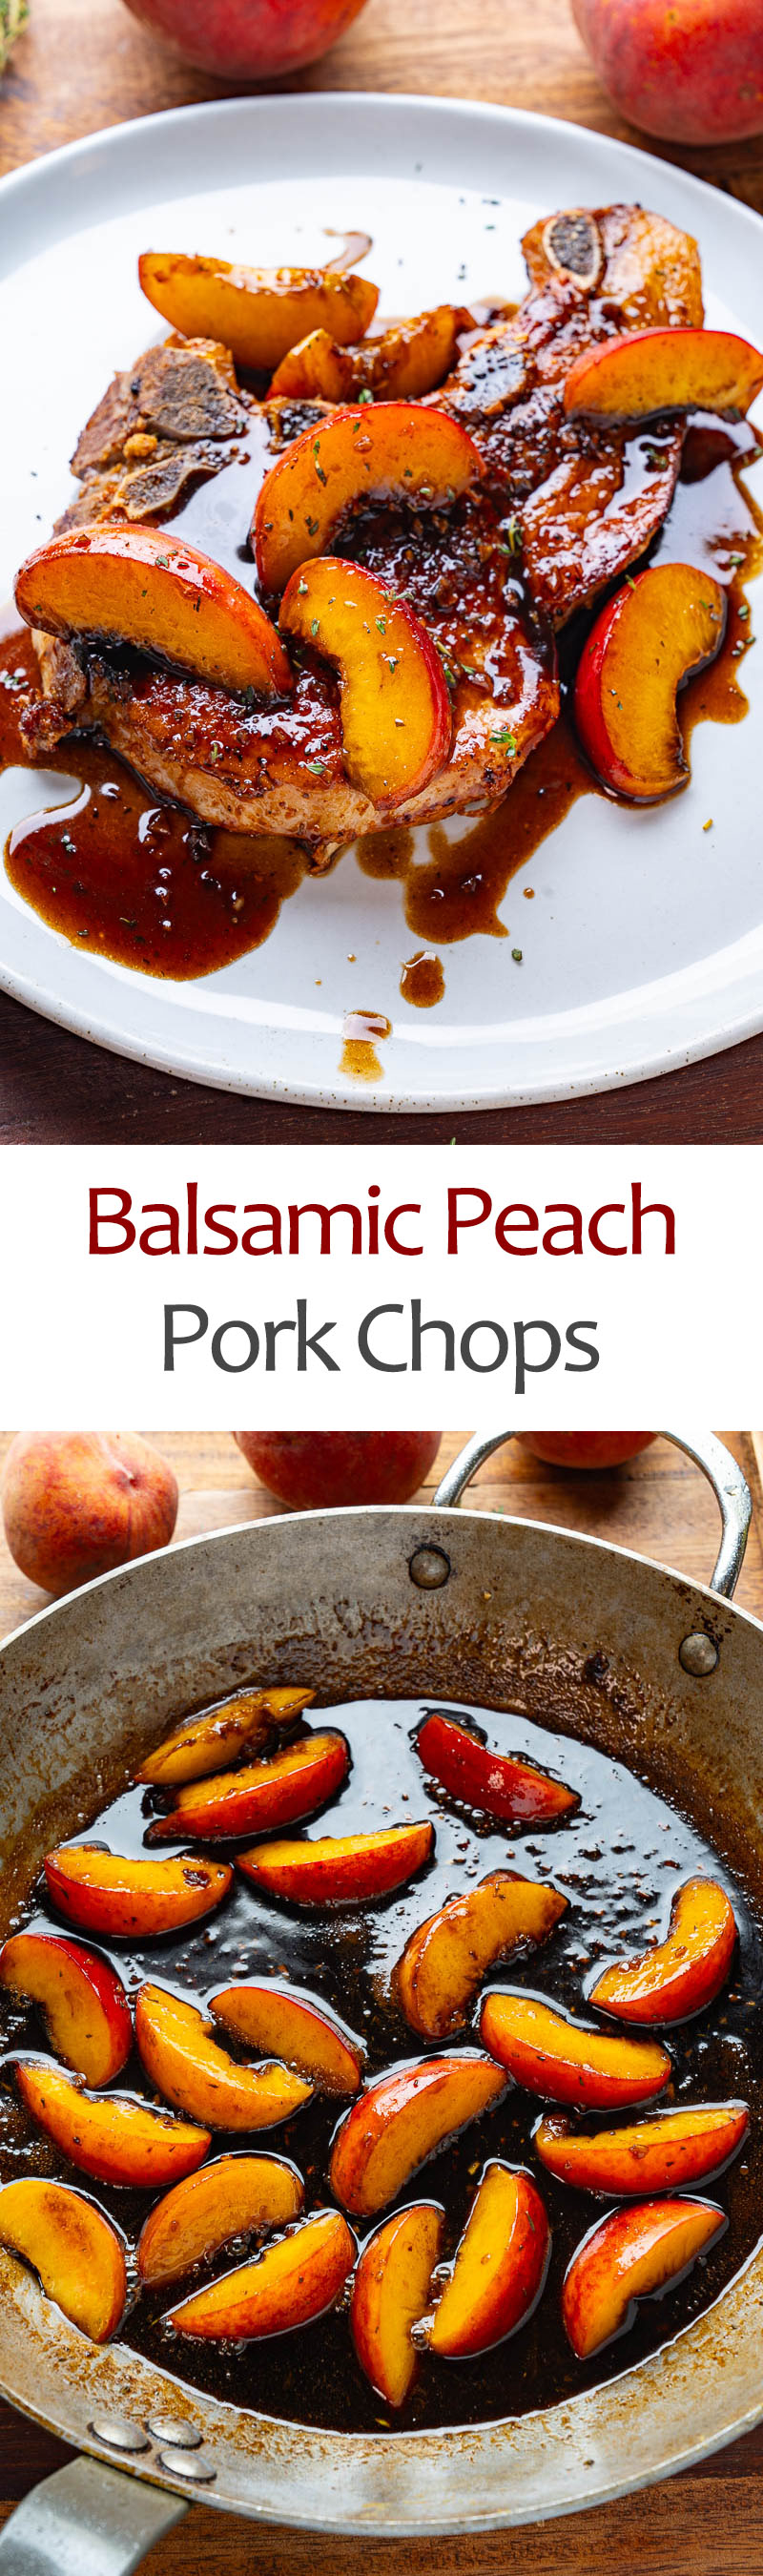 Balsamic Peach Pork Chops with Blue Cheese